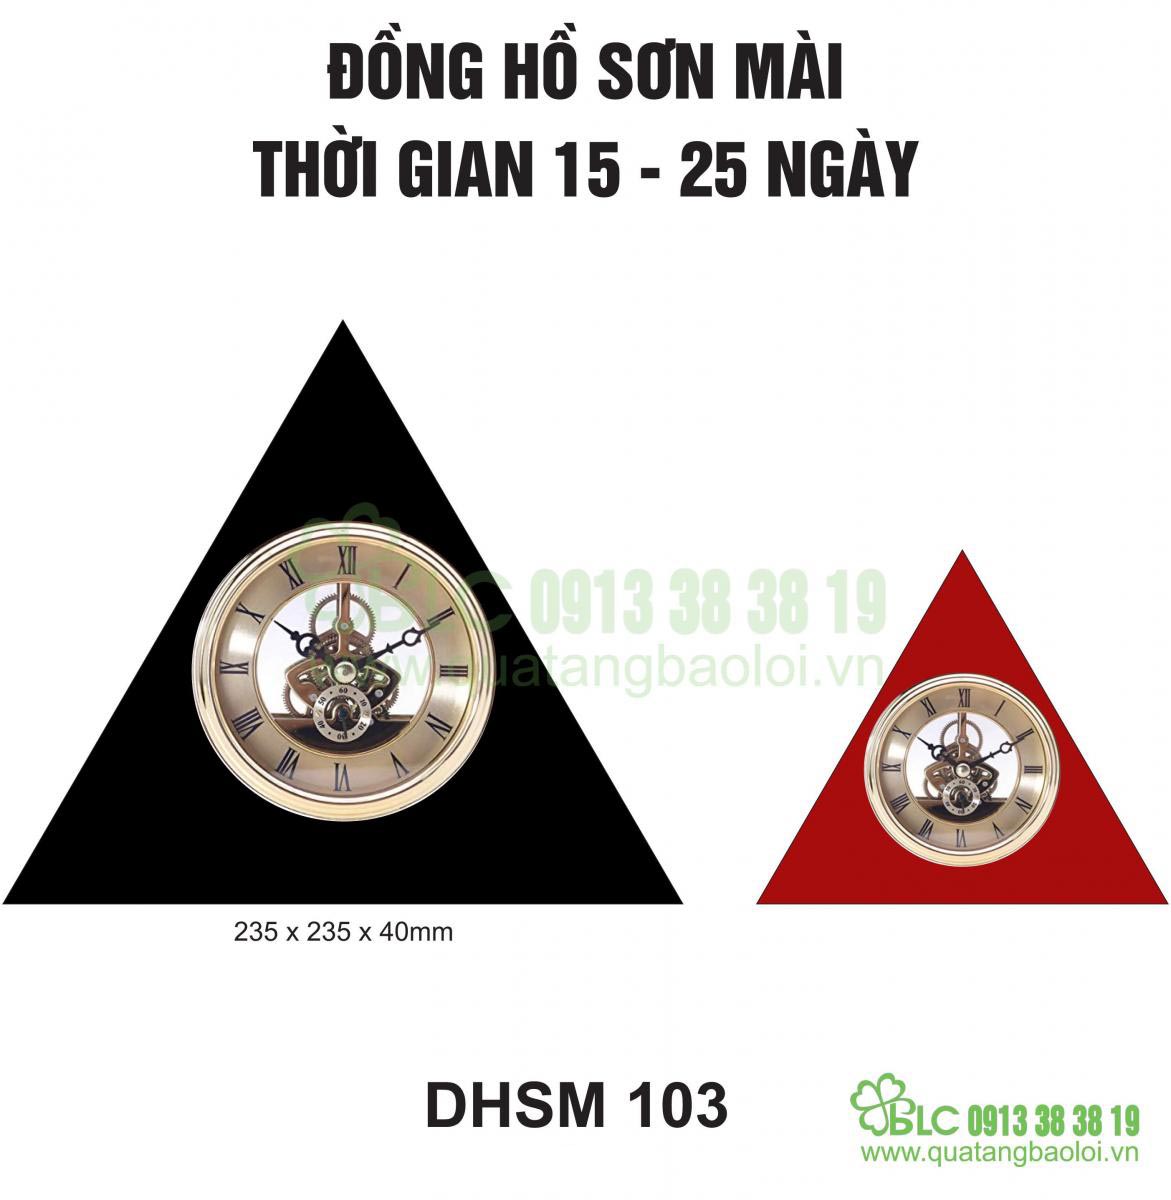 Đồng hồ để bàn sơn mài- DHSM 103